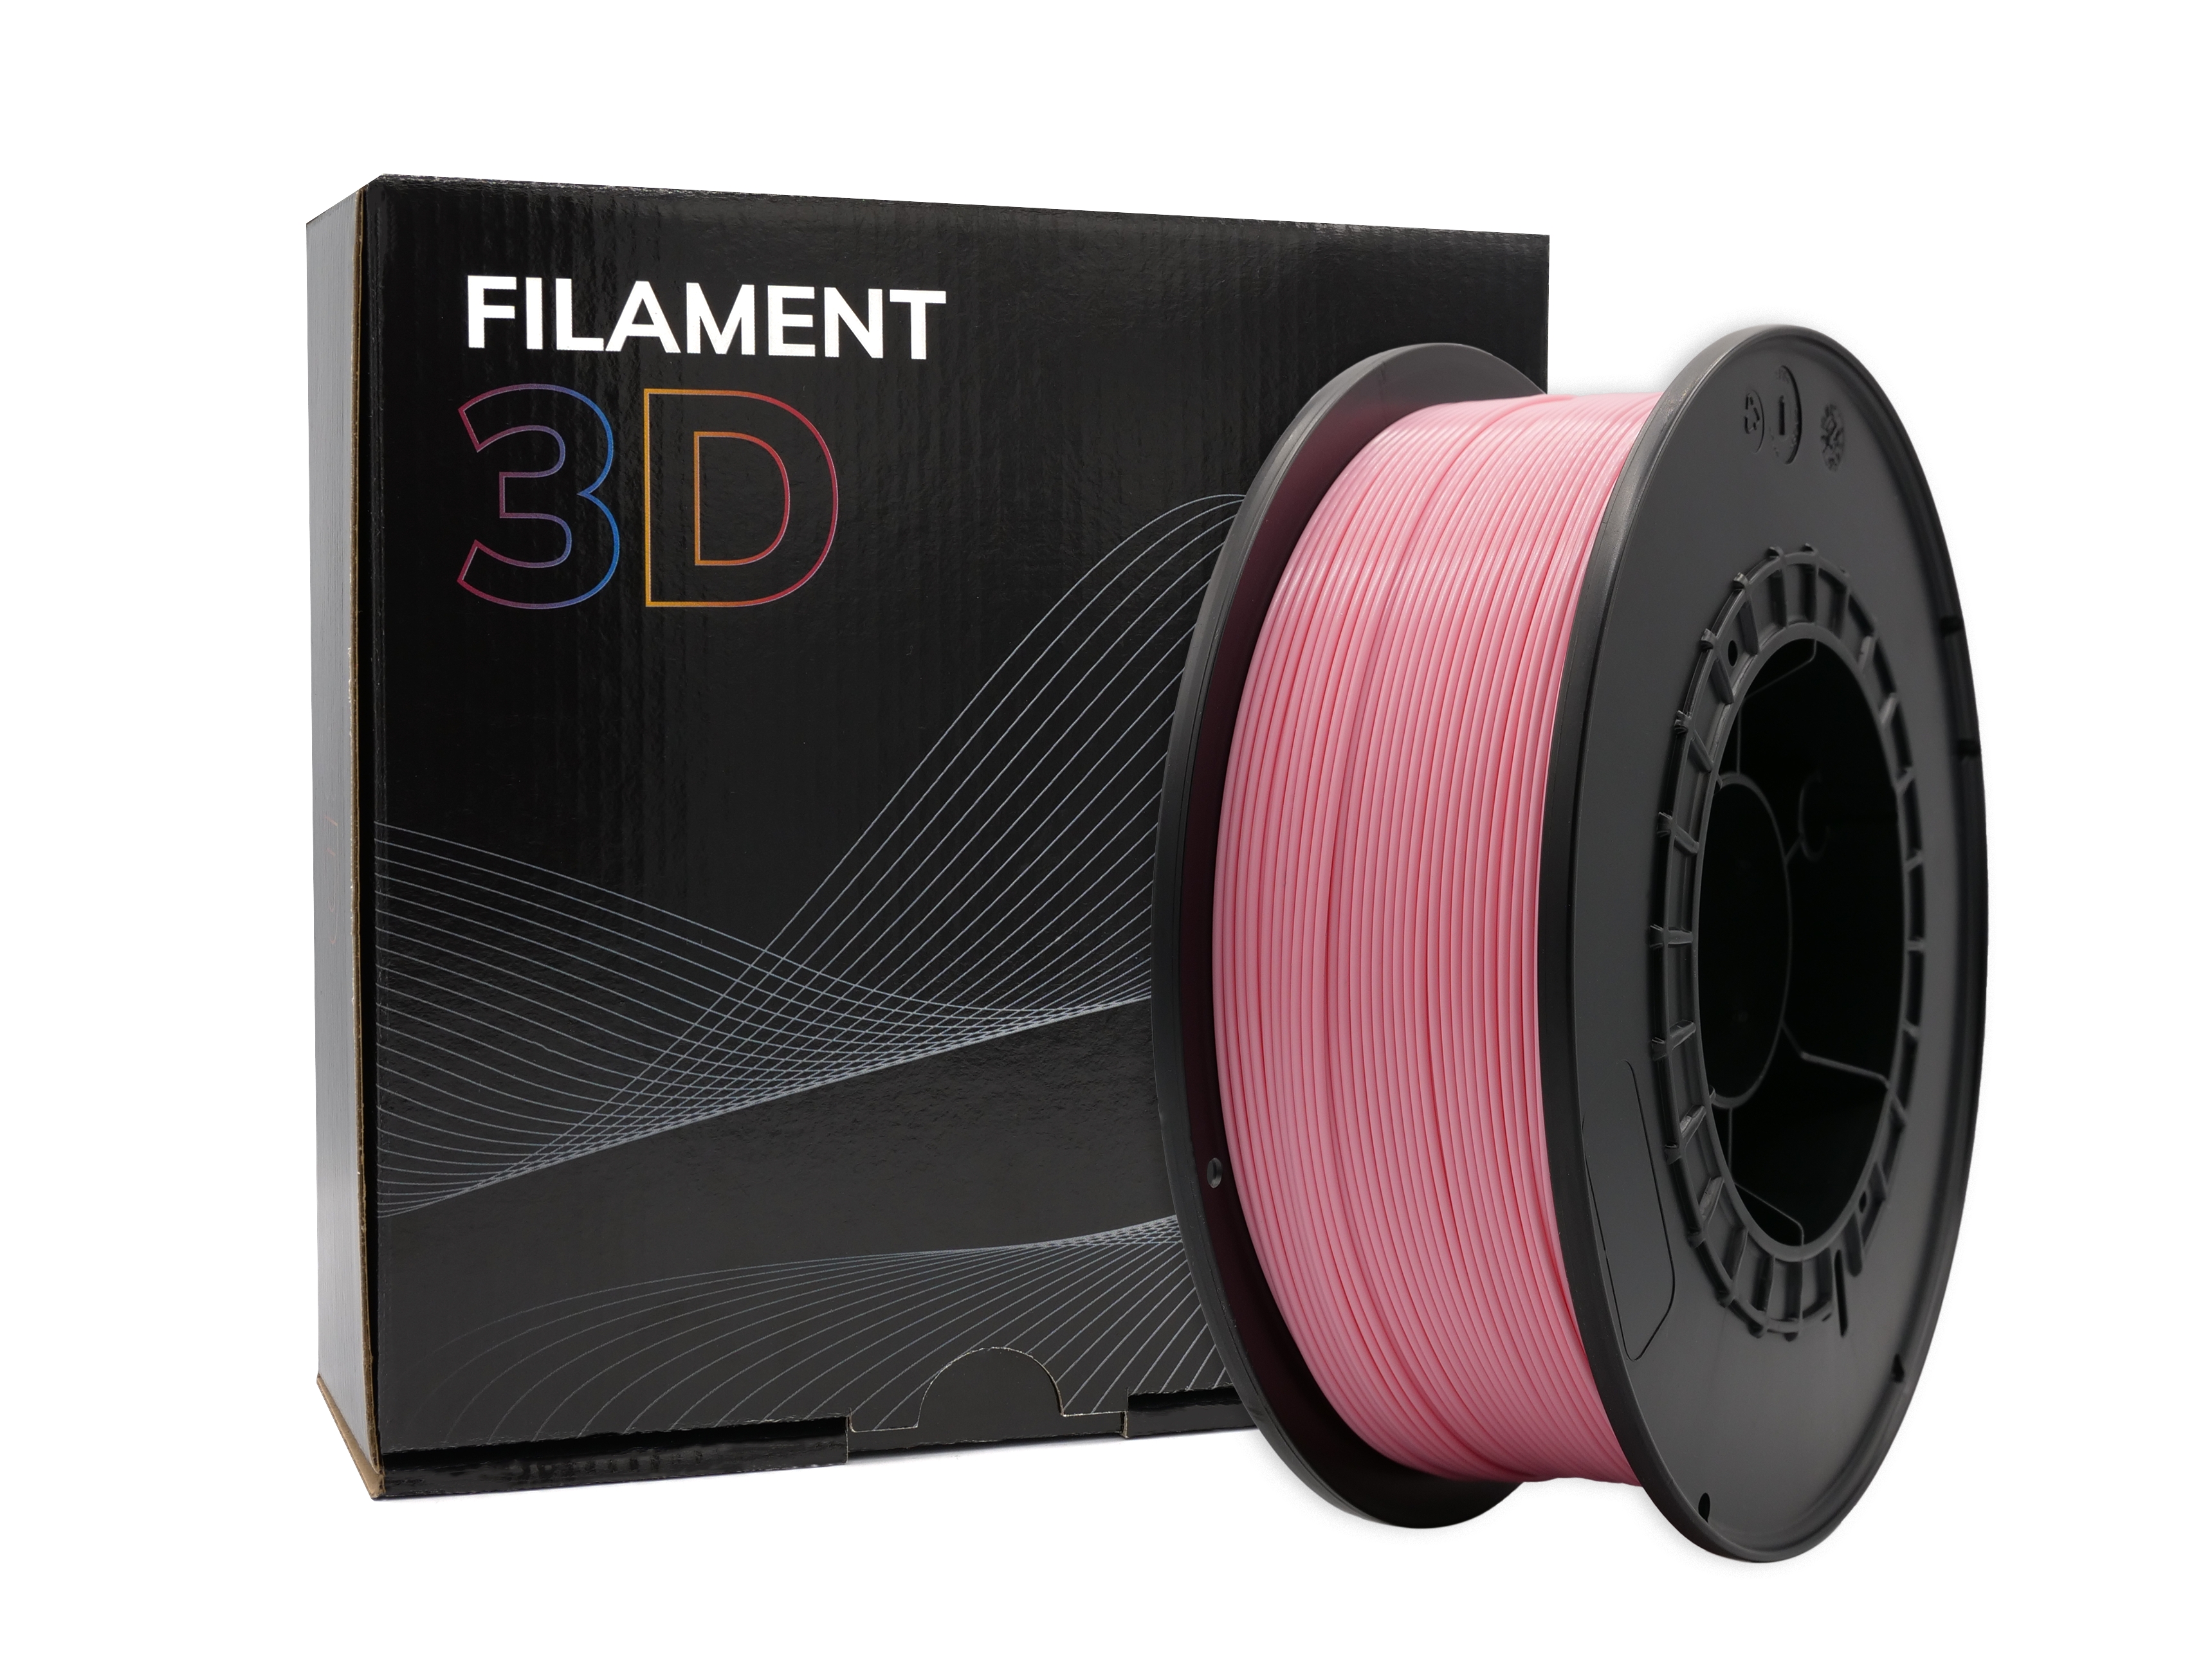 Filament PLA 3D - Diamètre 1.75mm - Bobine 1kg - Couleur Rose Crème